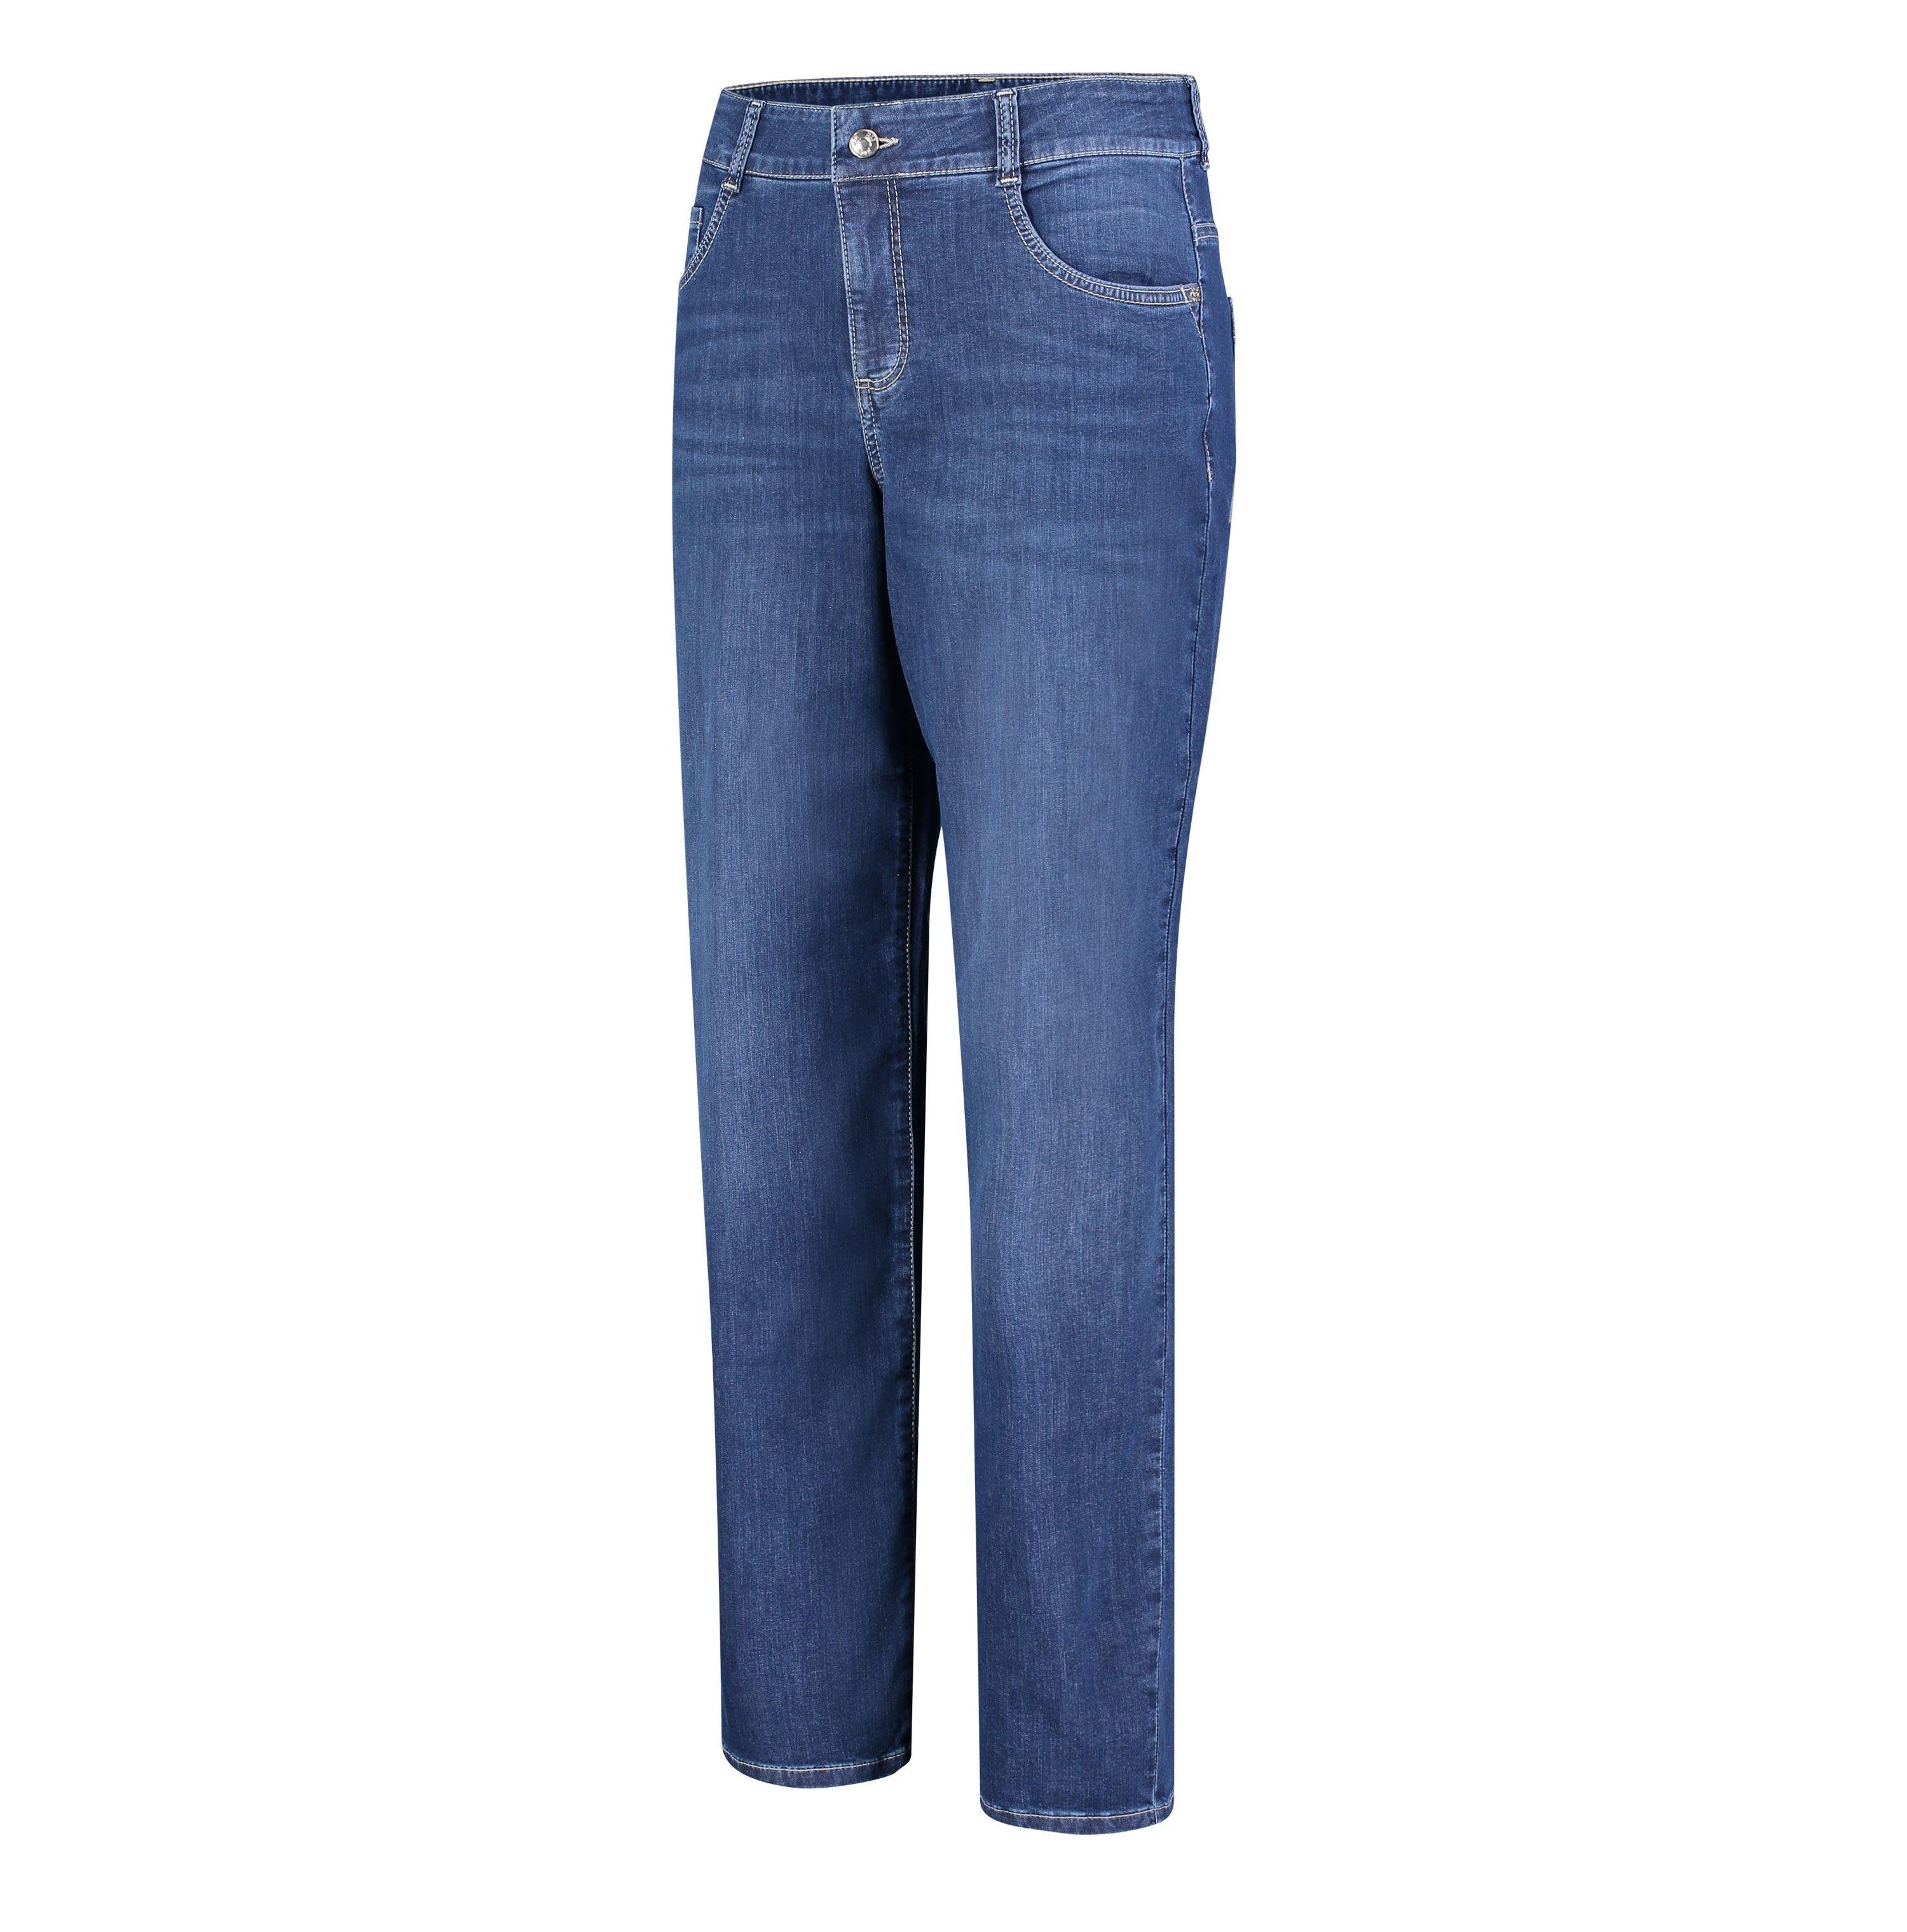 MAC Stretch-Jeans MAC D883 basic dark 5381-90-0391 GRACIA blue wash